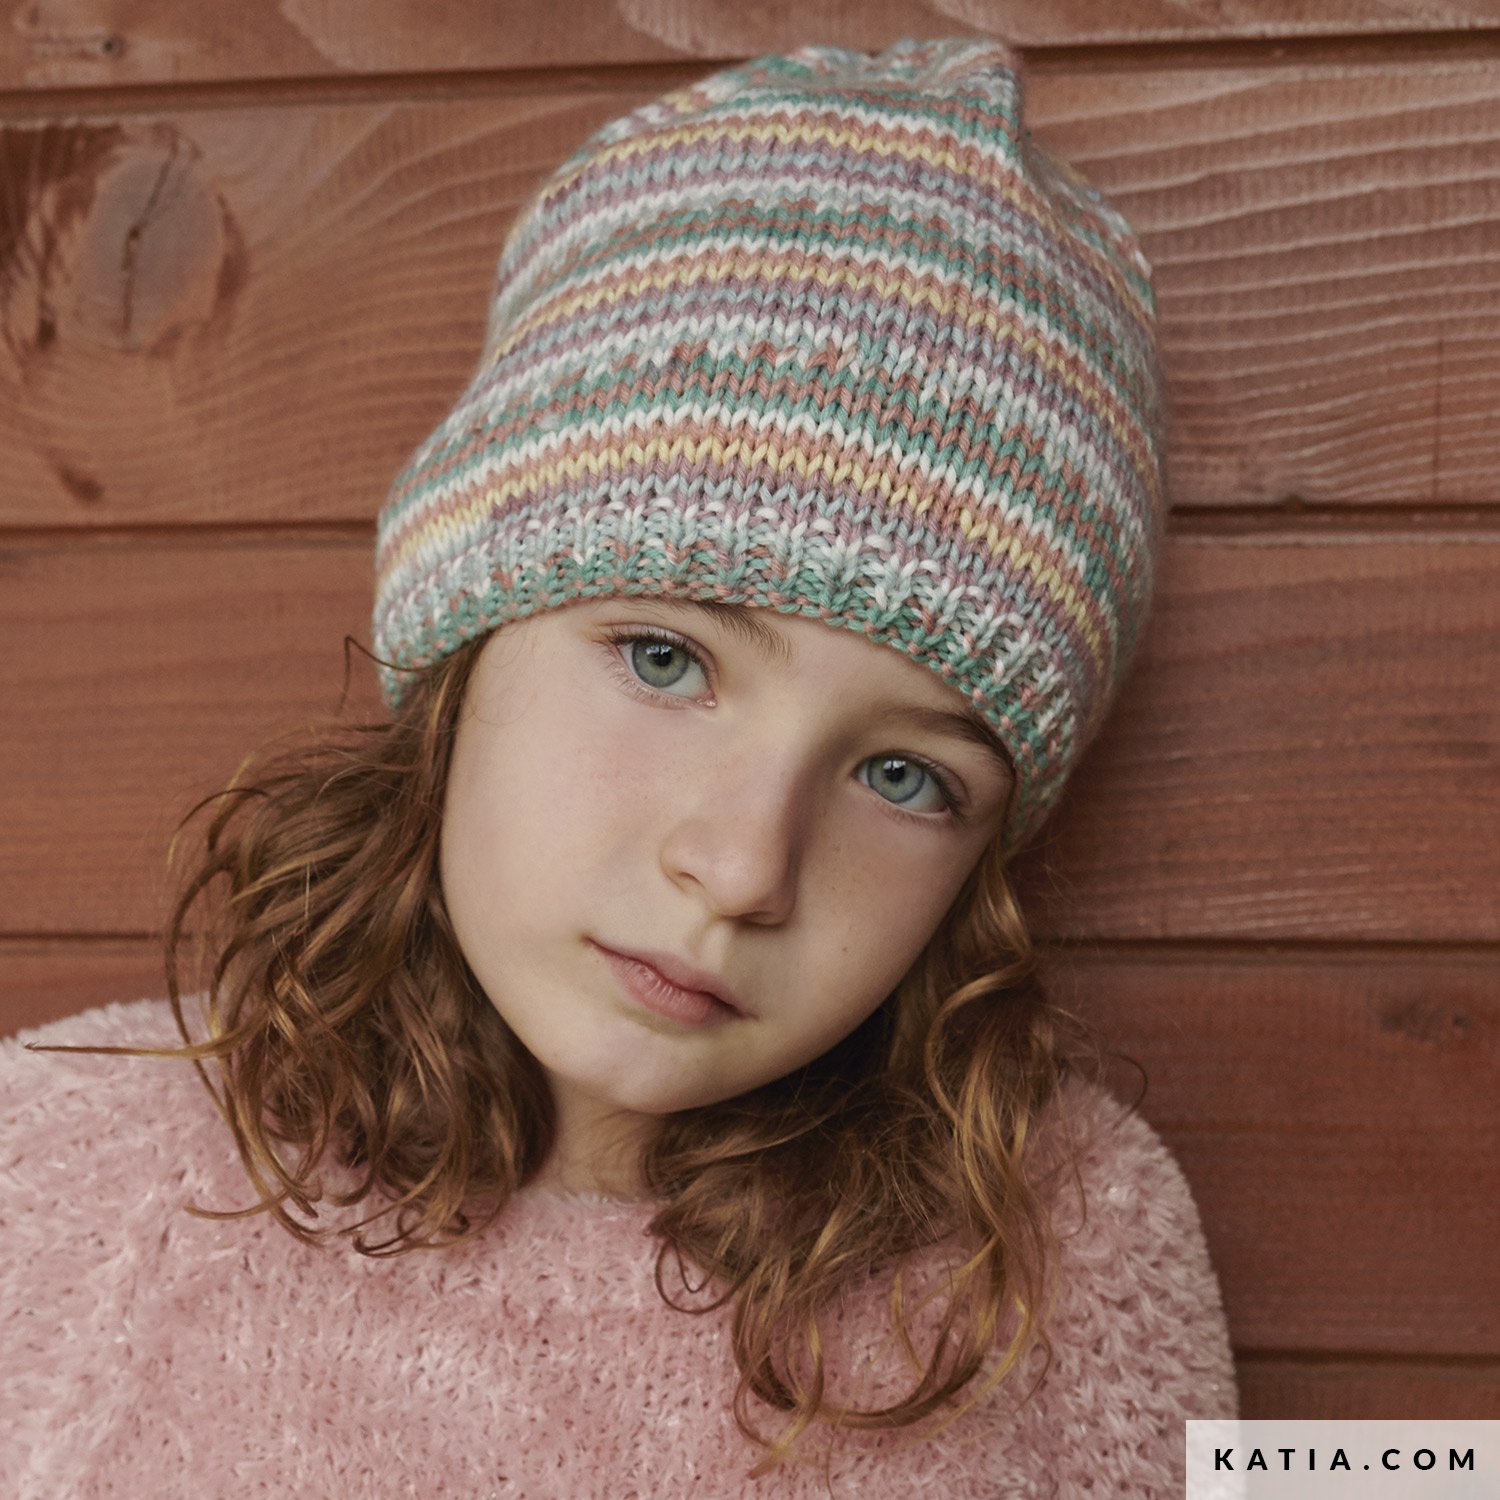 https://www.katia.com/files/mod/6182/patron-tricoter-tricot-crochet-enfant-bonnet-automne-hiver-katia-6182-20-g.jpg